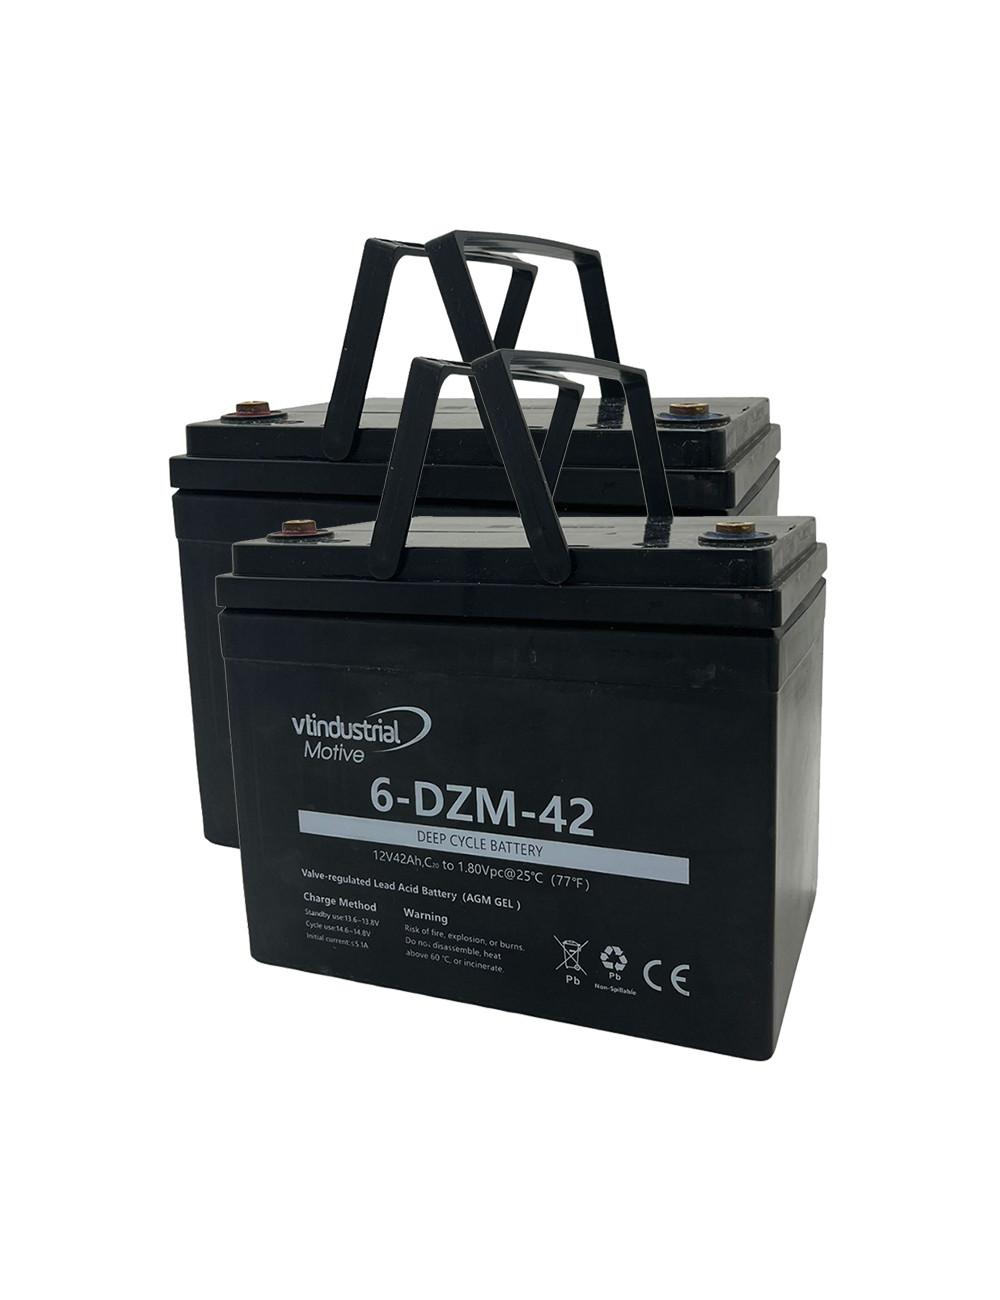 Pacote 2 baterias gel hibrido para Sterling Sapphire y Sapphire 2 de Sunrise Medical  de 12V 42Ah C20 ciclo profundo 6-DZM-42 - 